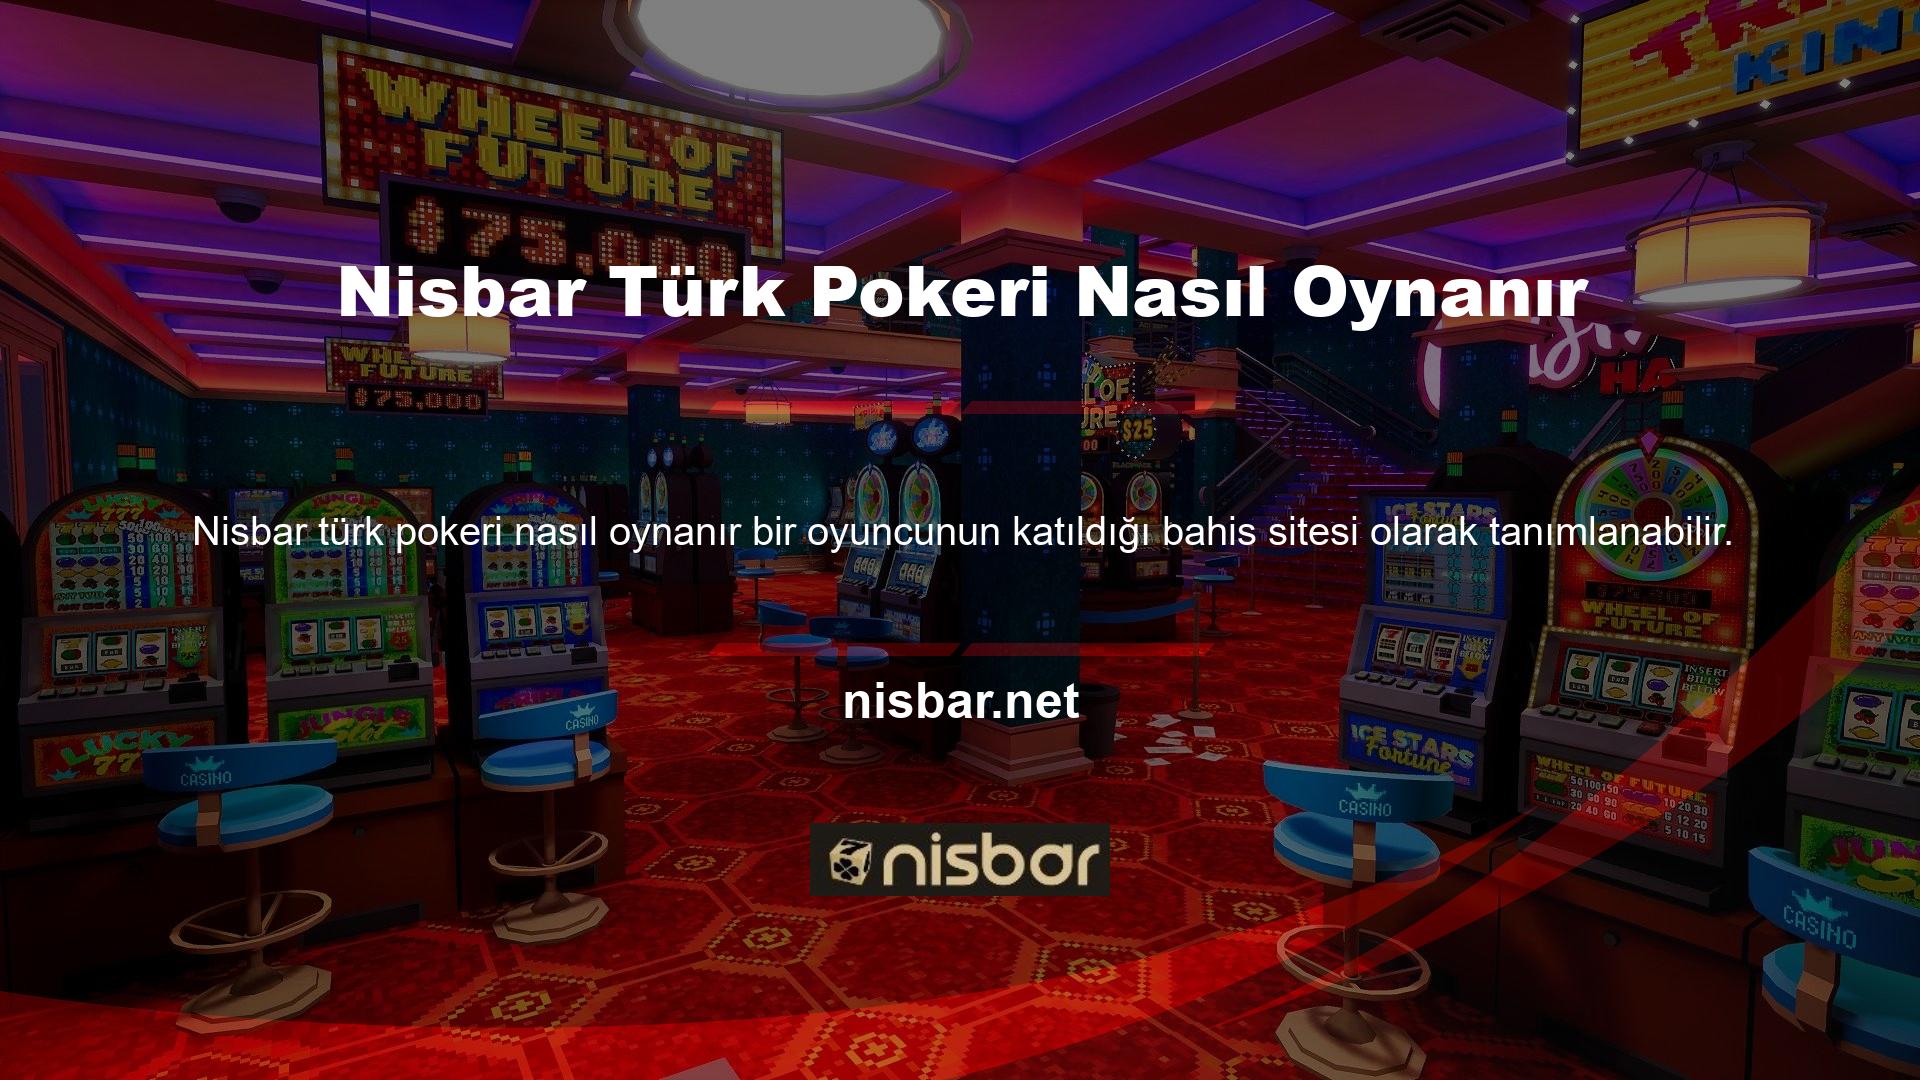 Casino oyunları oyuncular tarafından sevilmekle birlikte Türk pokeri oynama imkanı da sunmaktadır